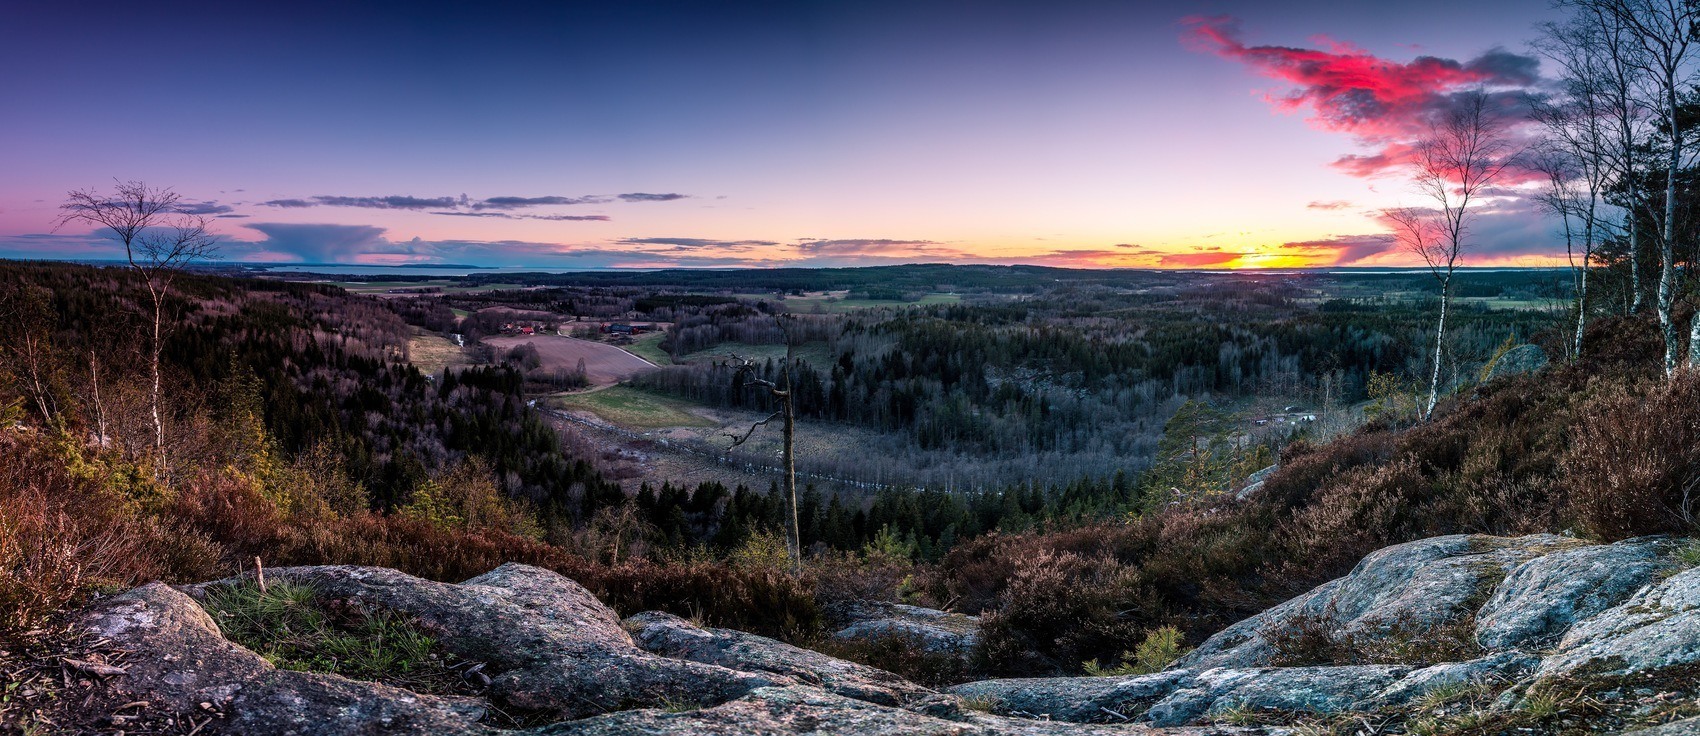 Magisk utsikt från Håleberget över ett landskap i solnedgång.